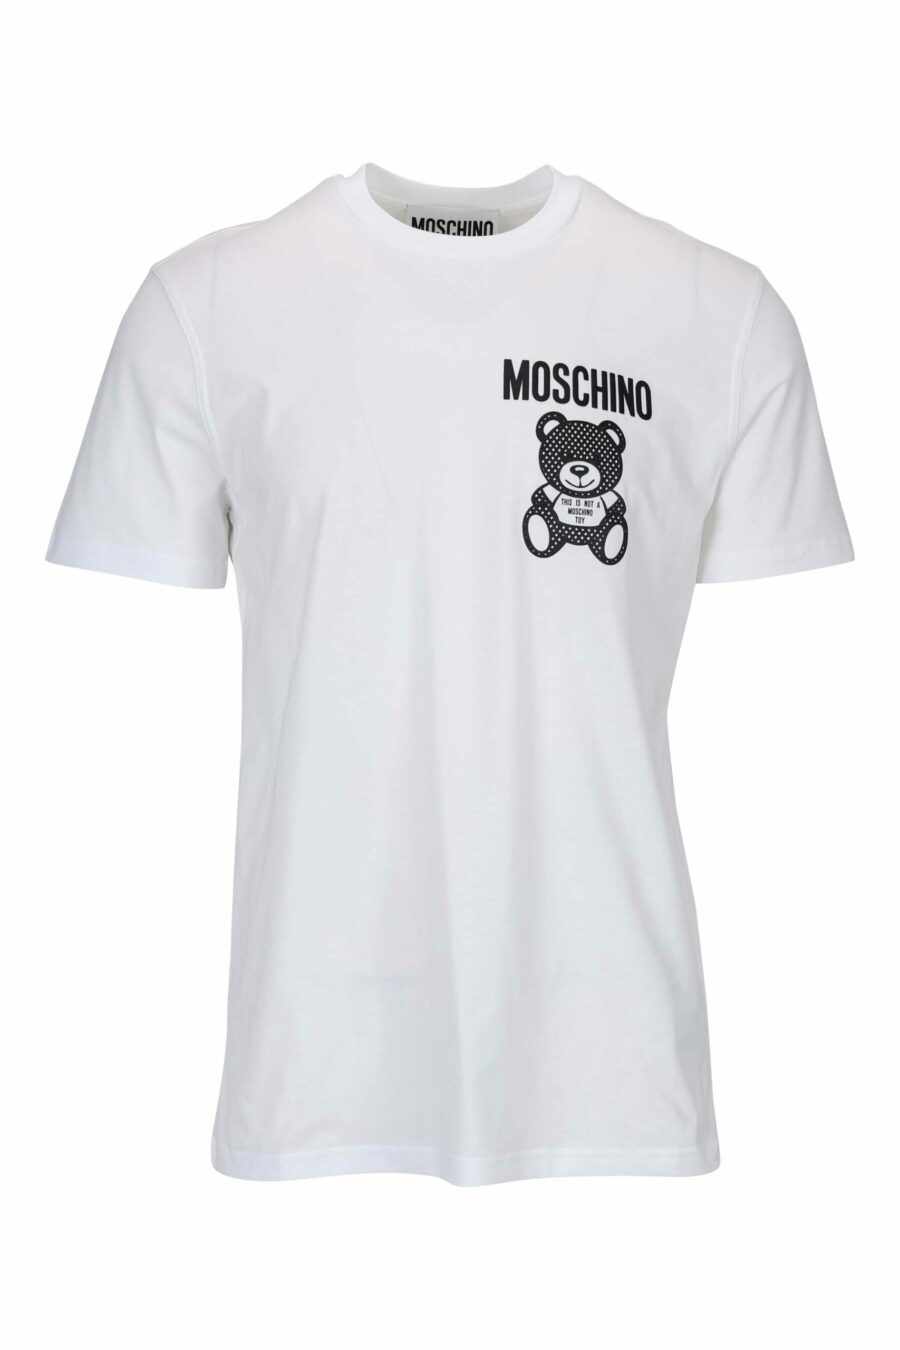 Camiseta blanca con minilogo oso en puntos monocromático - 667113455822 scaled